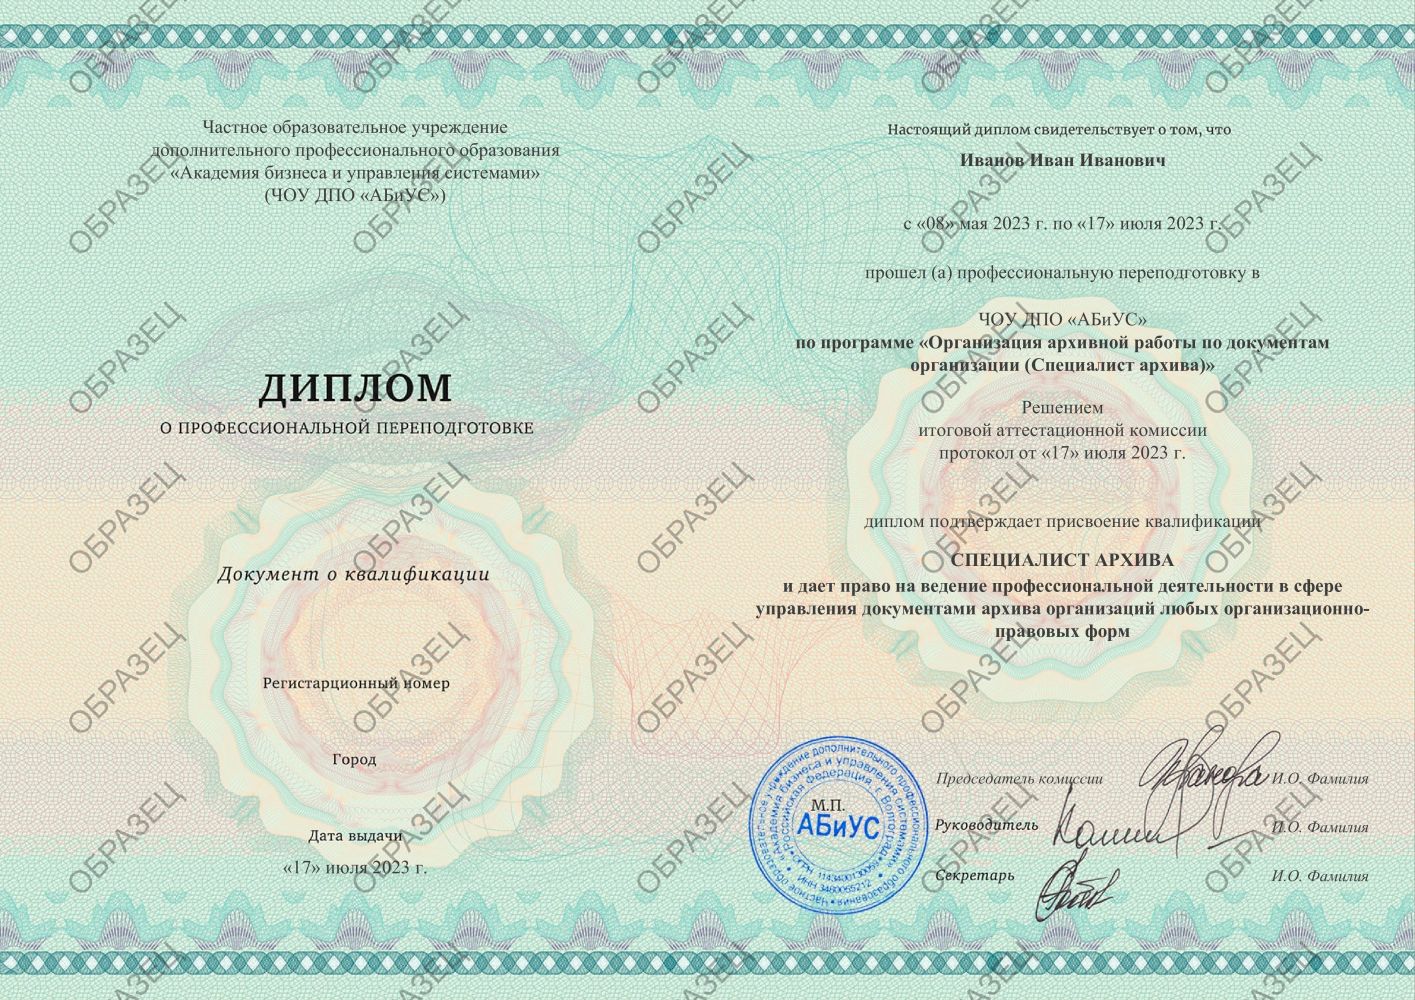 Диплом Организация архивной работы по документам организации (Специалист архива) 260 часов 10688 руб.